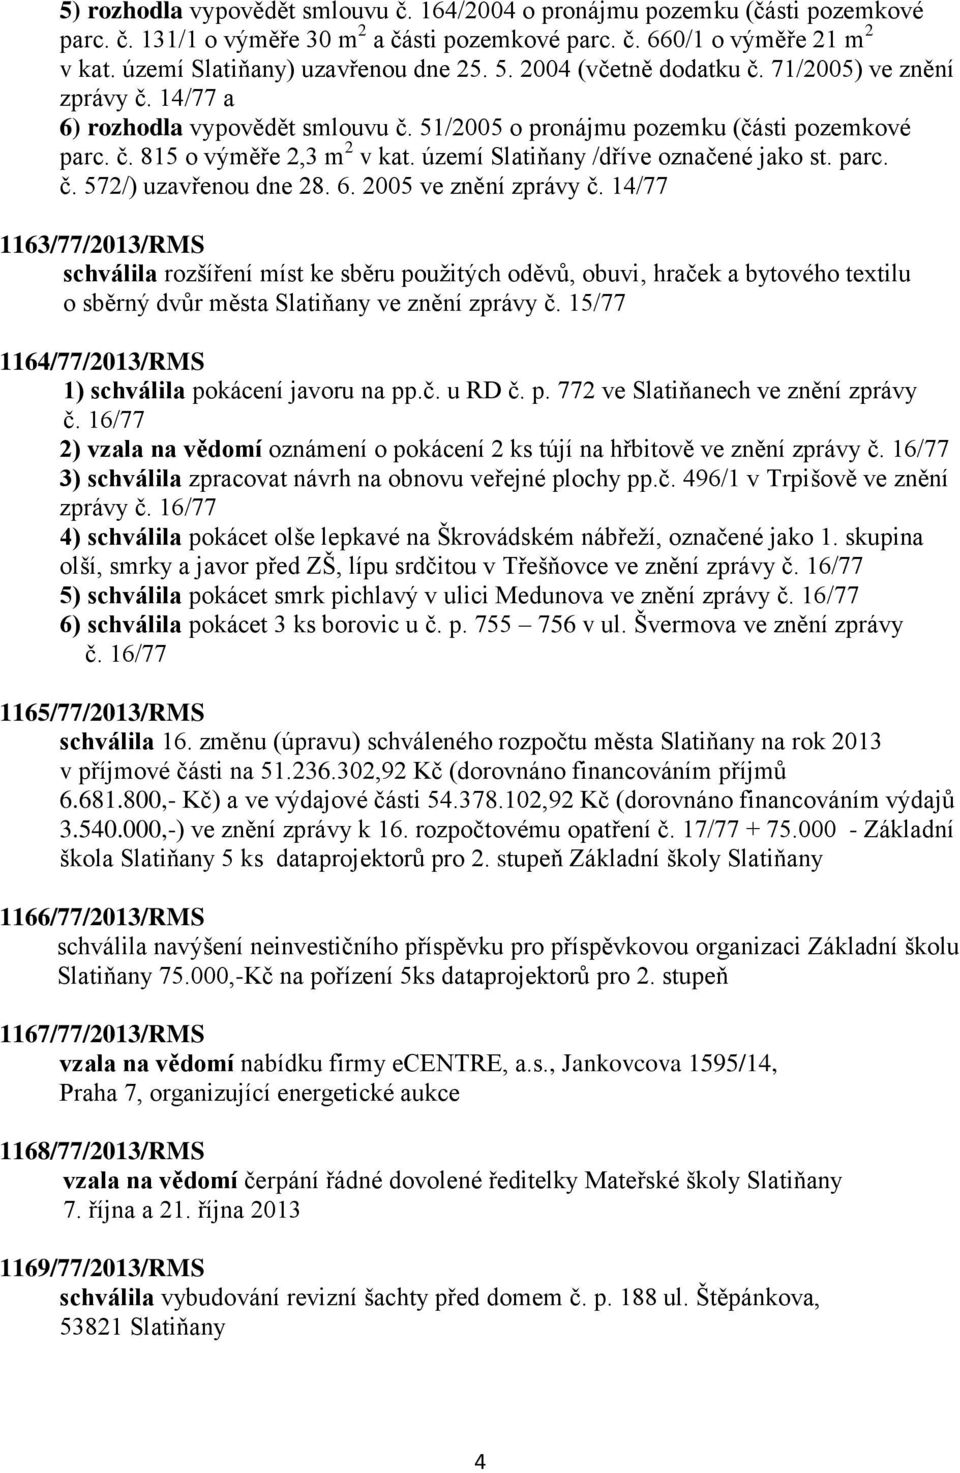 území Slatiňany /dříve označené jako st. parc. č. 572/) uzavřenou dne 28. 6. 2005 ve znění zprávy č.